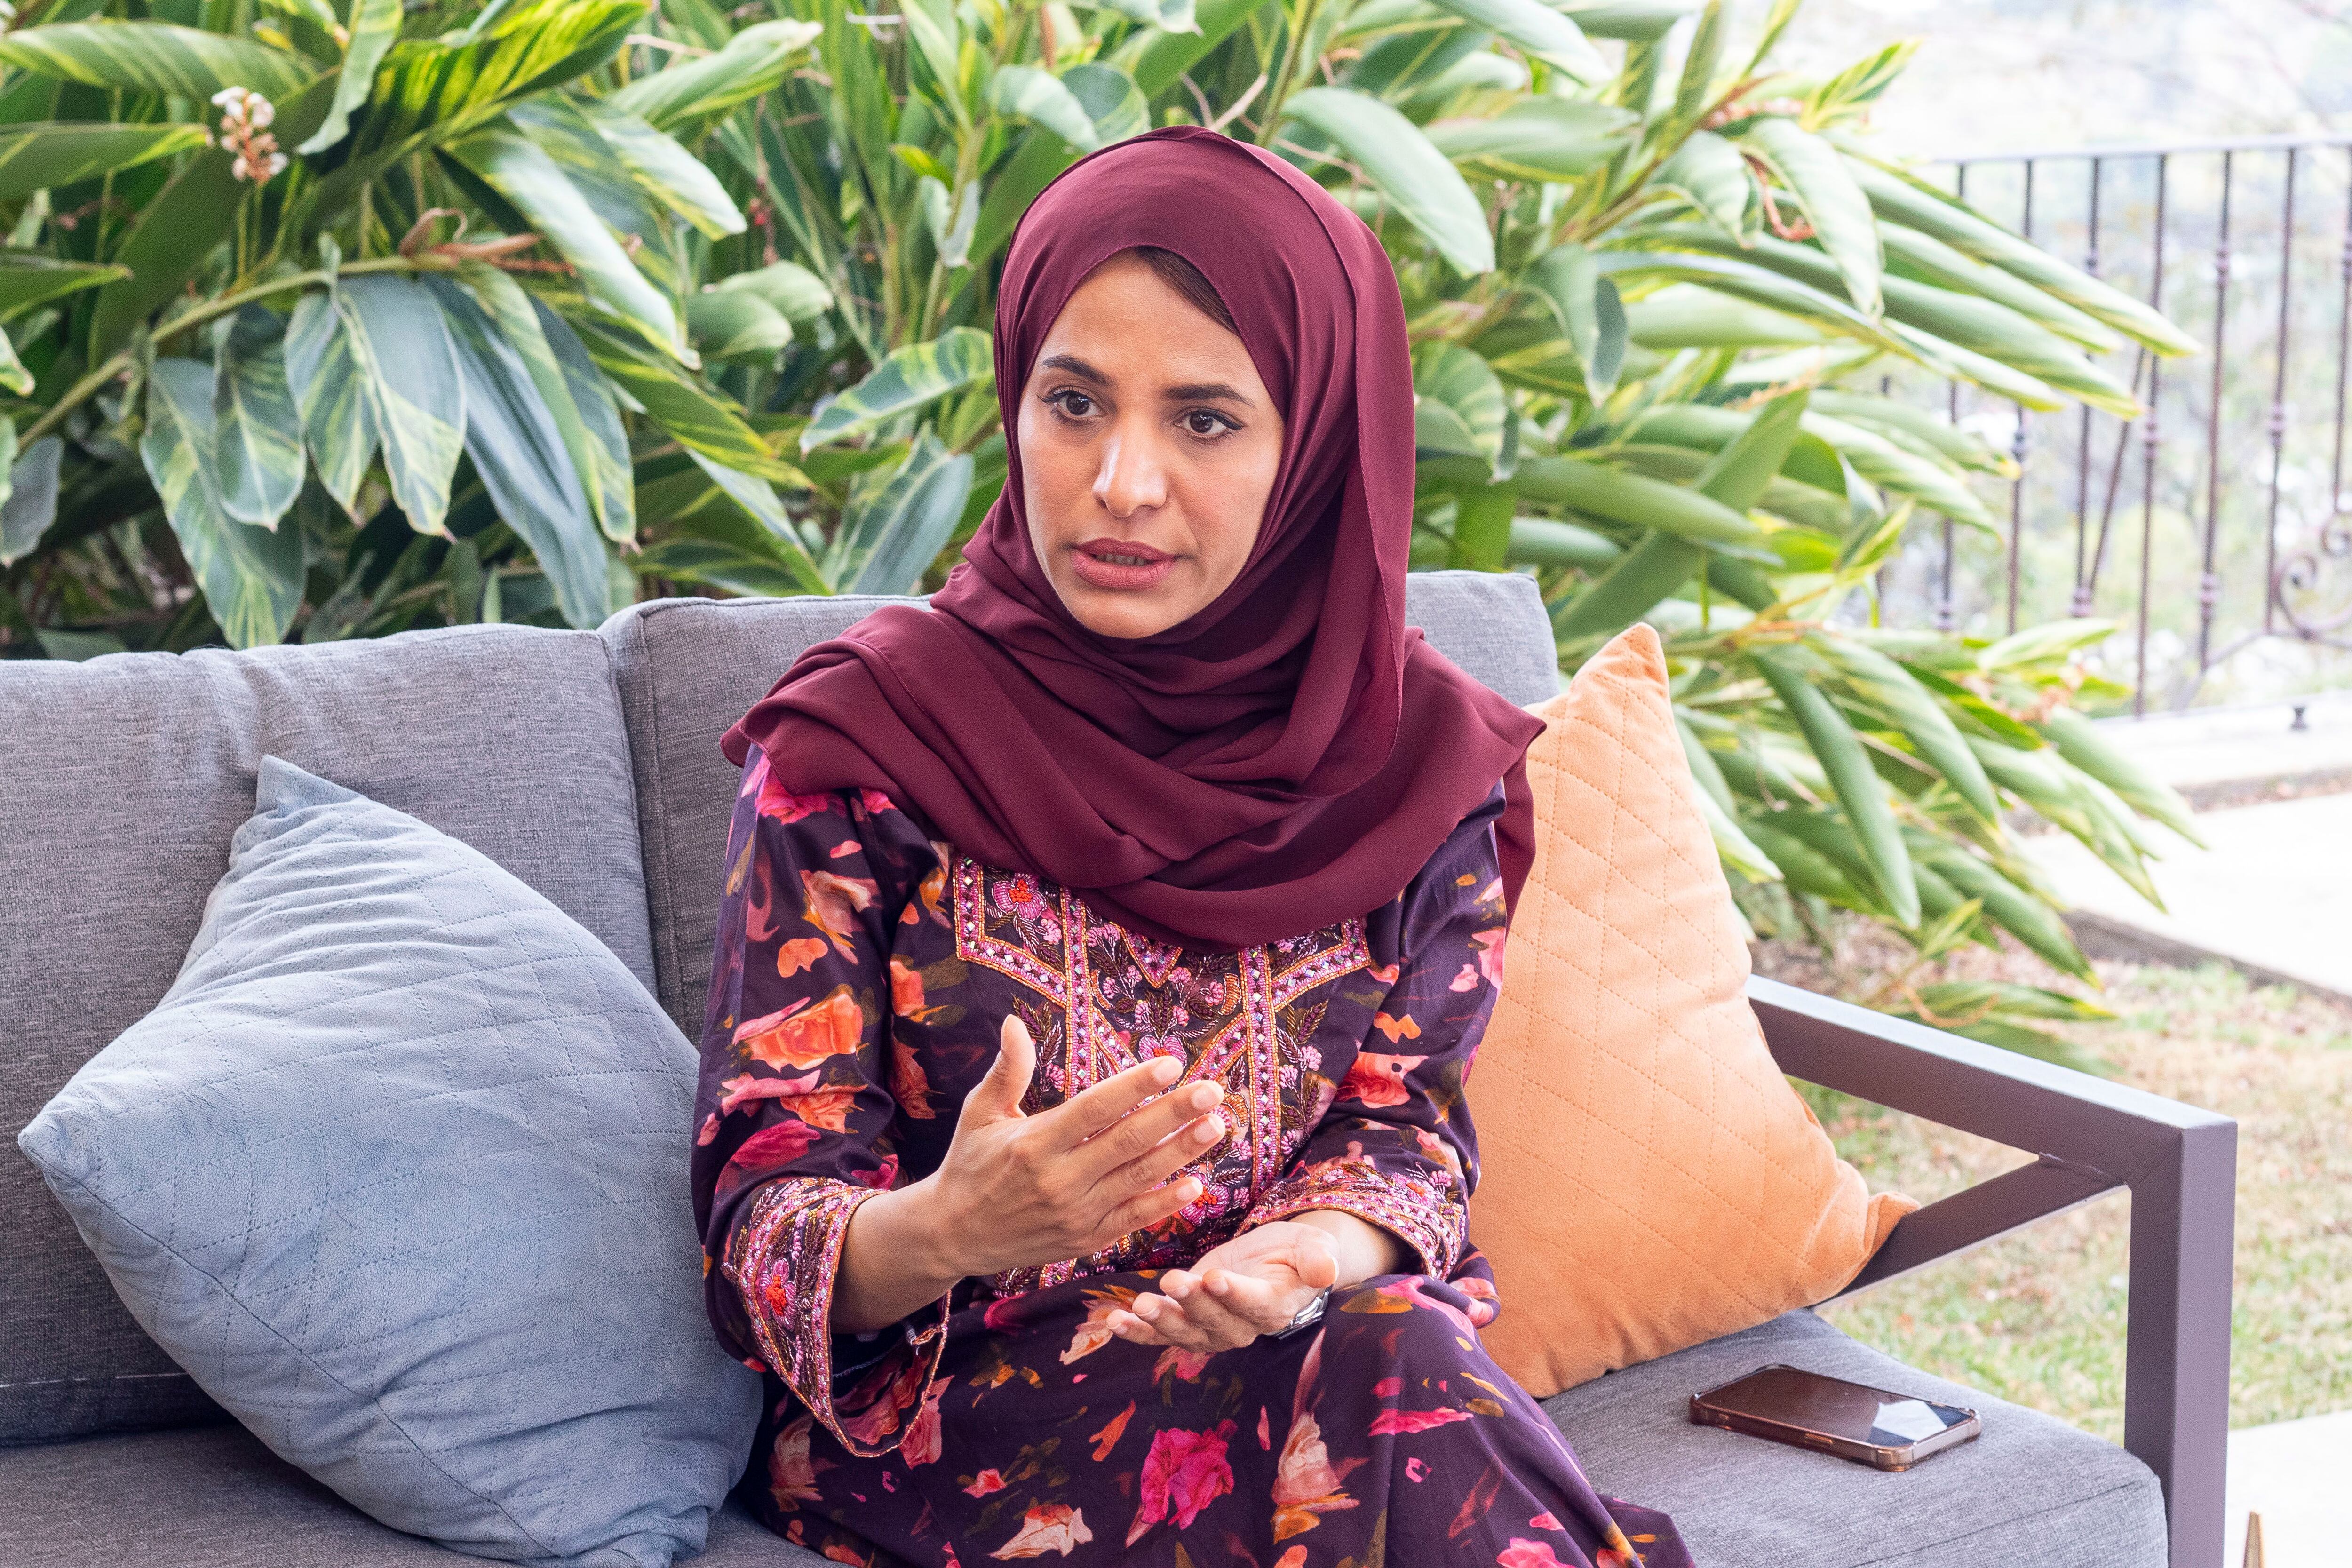 La embajadora de Emiratos Árabes Unidos en Costa Rica, Rawda Al Otaiba, asegura que aún existen muchas ideas erróneas sobre los derechos de las mujeres en su país. Fotografía: 